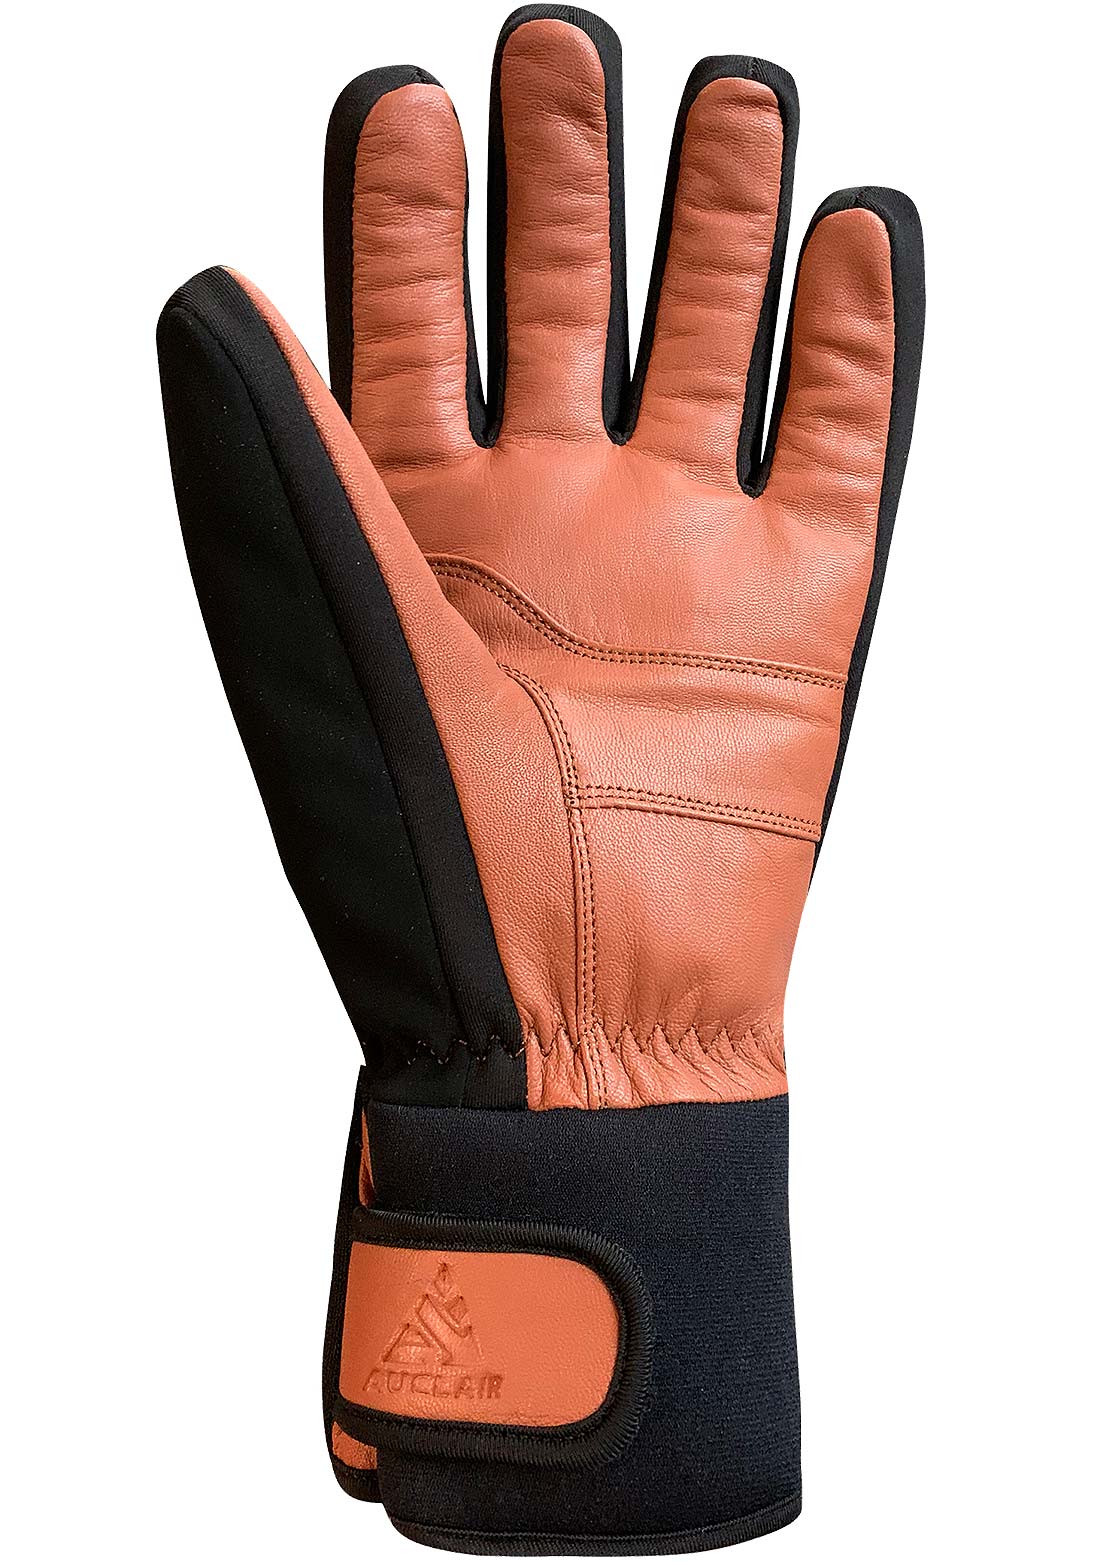 Auclair Trail Ridge Gloves Black/Cognac